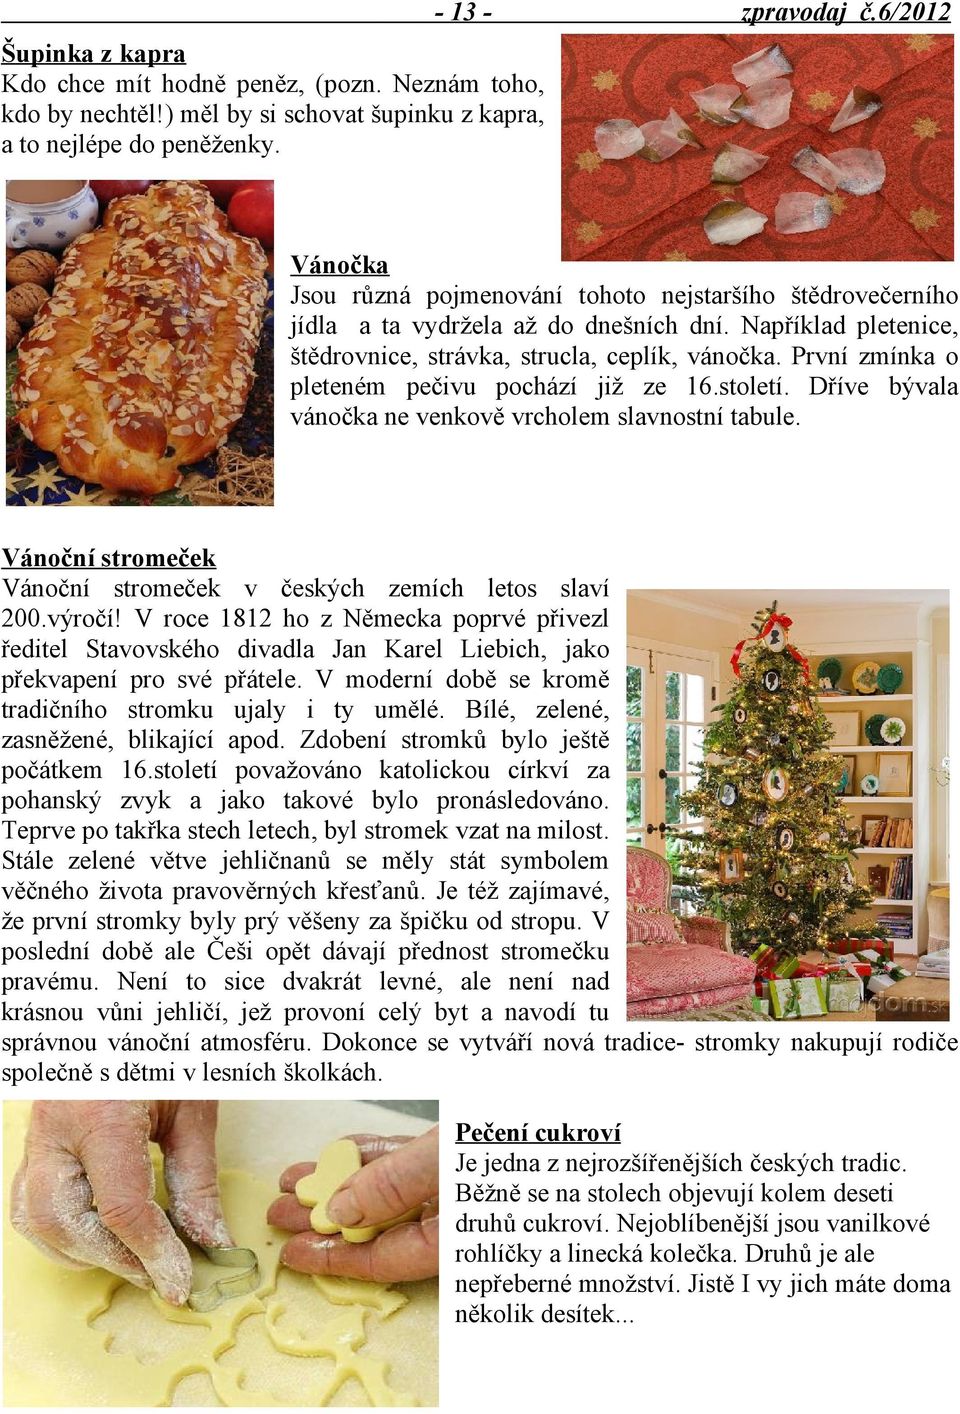 První zmínka o pleteném pečivu pochází již ze 16.století. Dříve bývala vánočka ne venkově vrcholem slavnostní tabule. Vánoční stromeček Vánoční stromeček v českých zemích letos slaví 200.výročí!